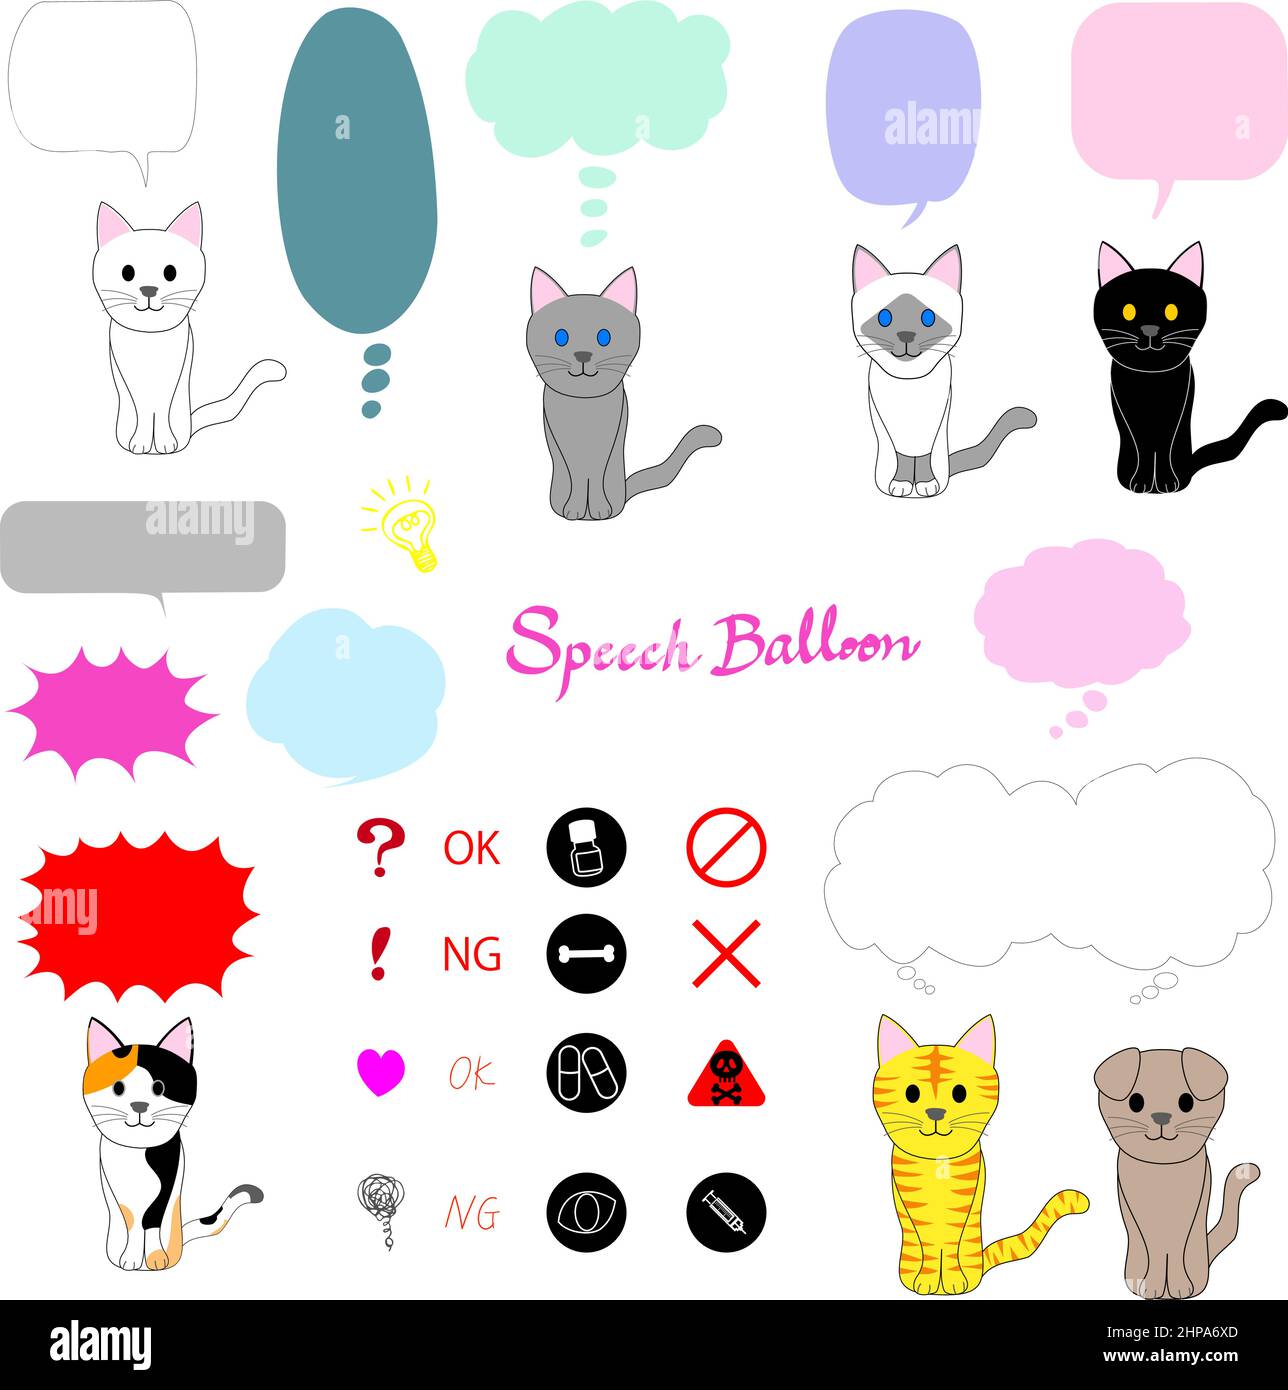 Colección de gatos delgados, iconos, y globos del discurso Foto de stock